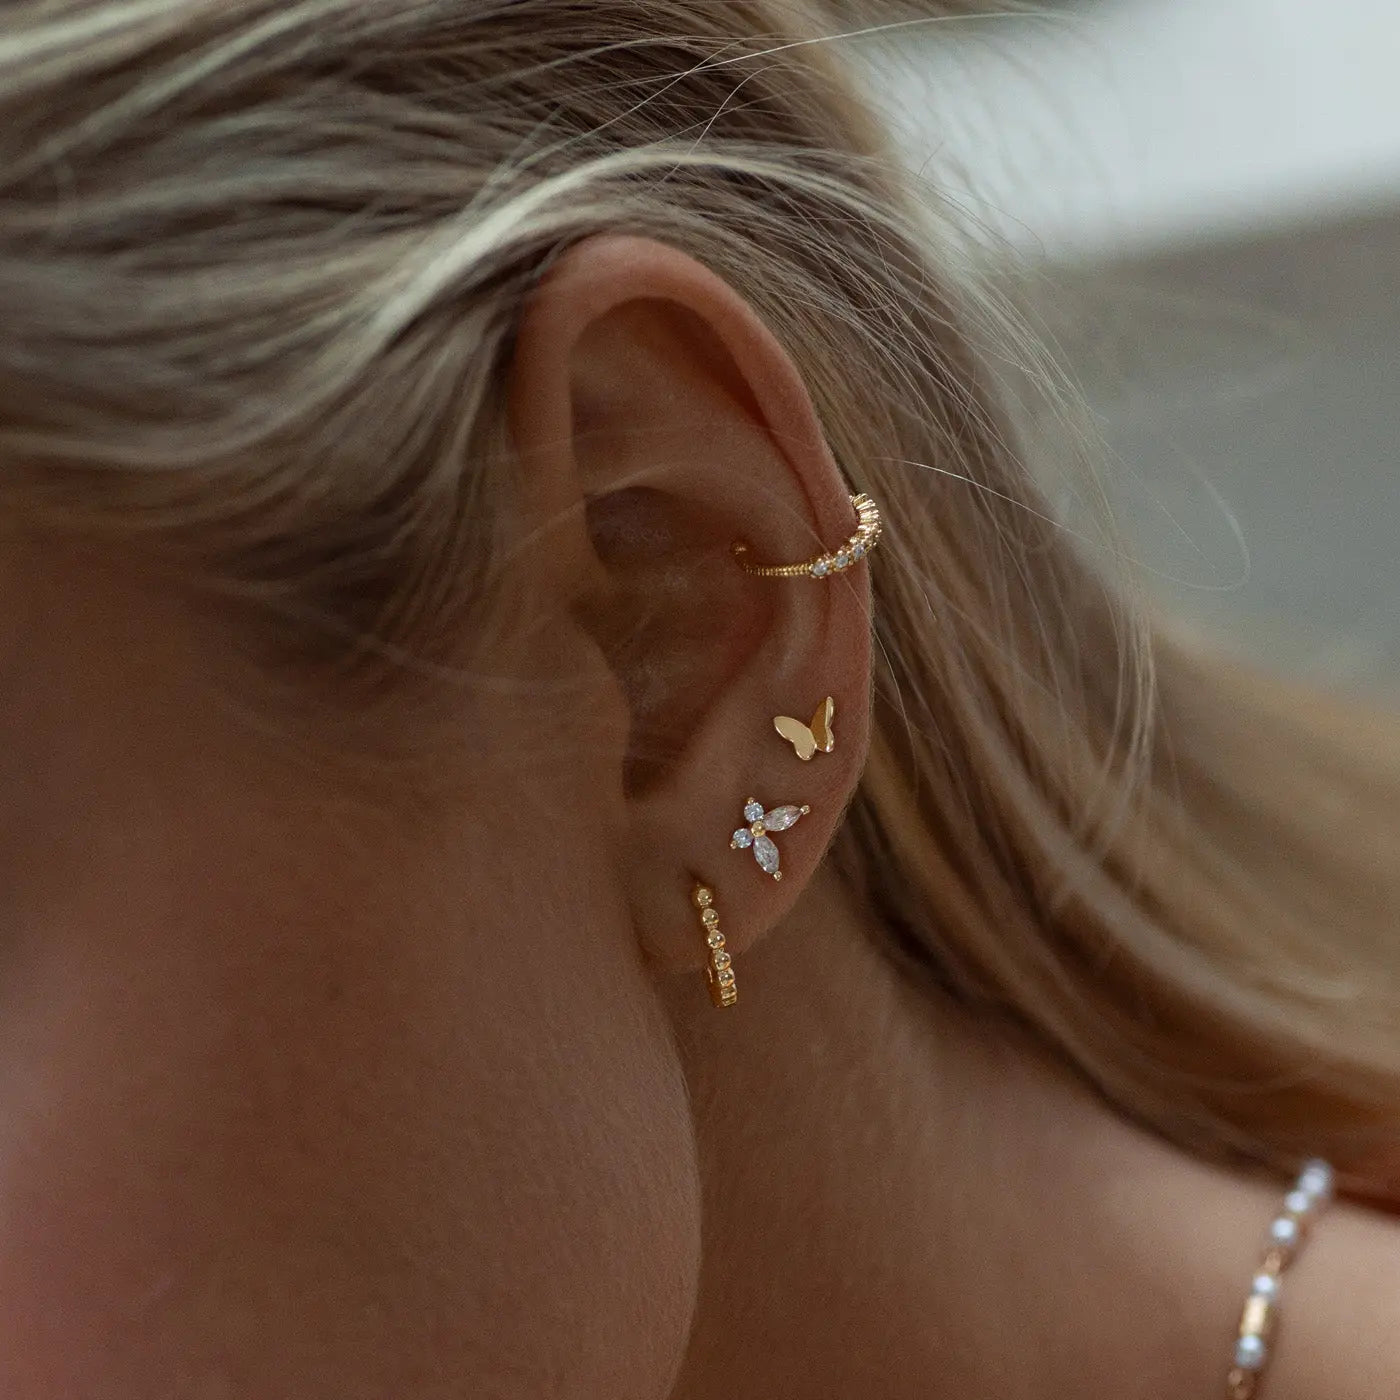 Liza - Mini Butterfly Stud Earrings